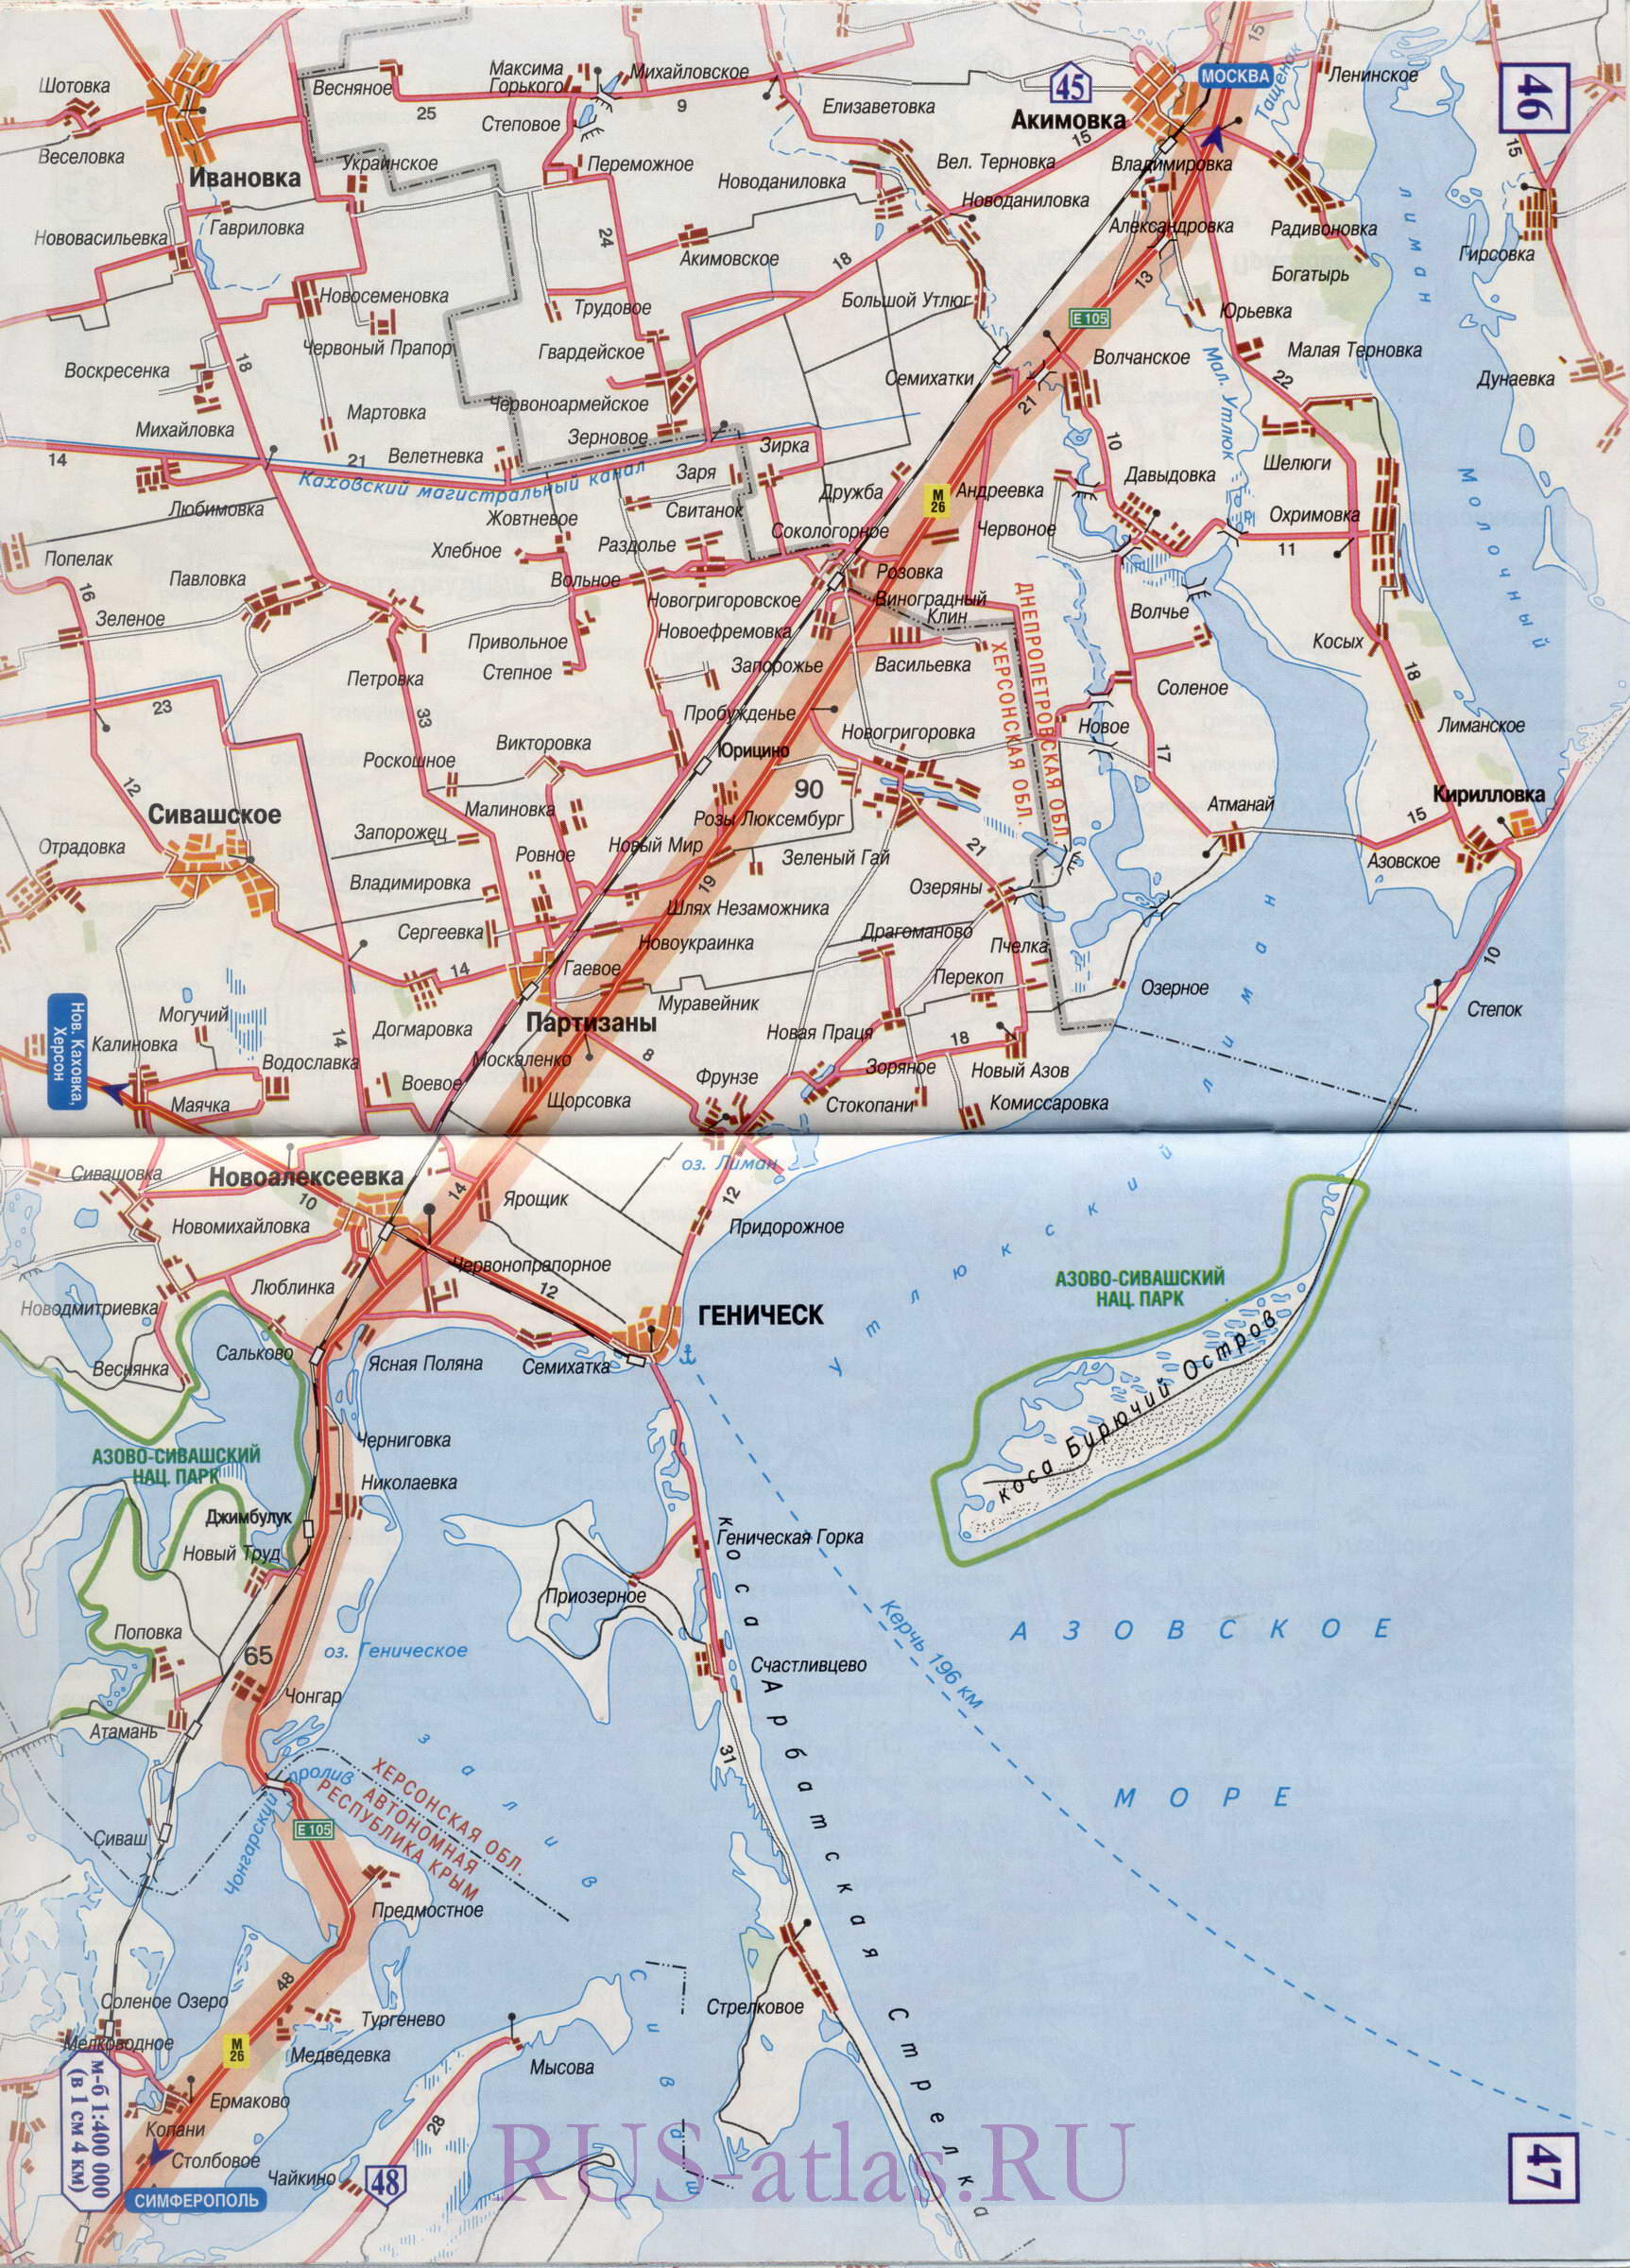 Карта автодороги Запорожье Симферополь. Подробная карта автомобильной трассы М2 на участке от Запорожья до Симферополя, A2 - 